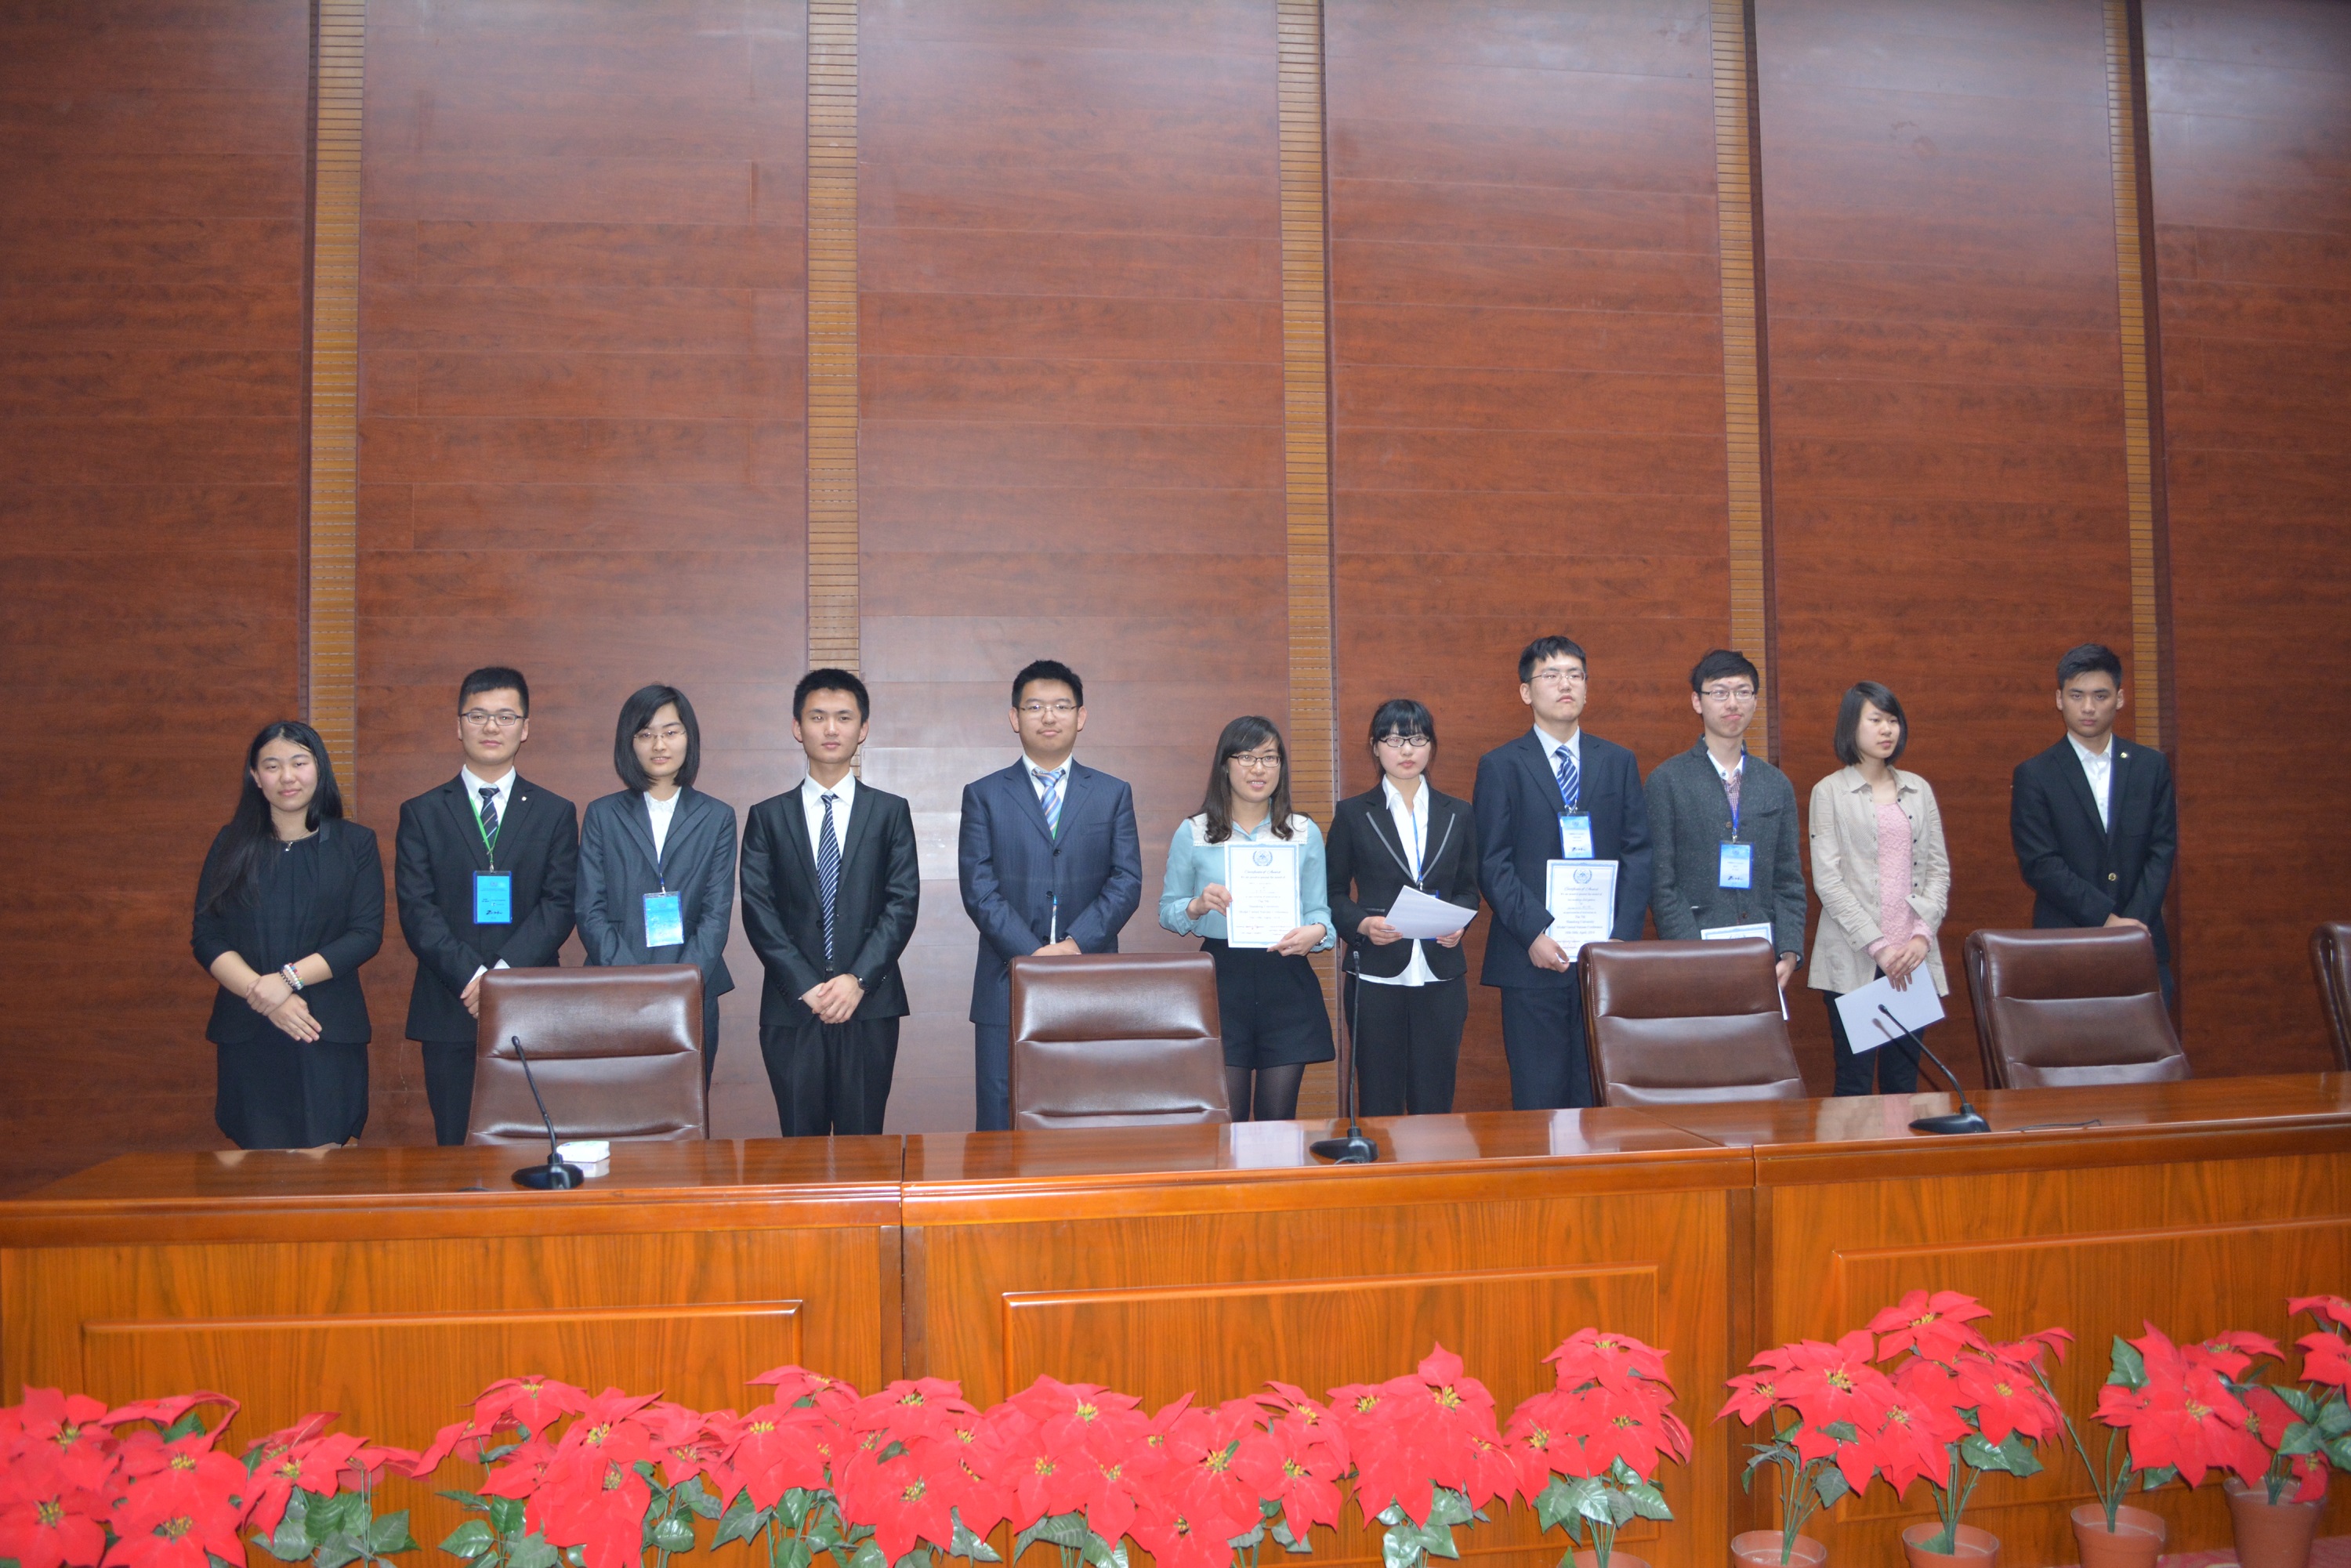 王浩然參加第五屆山東大學全國模擬聯合國大會活動